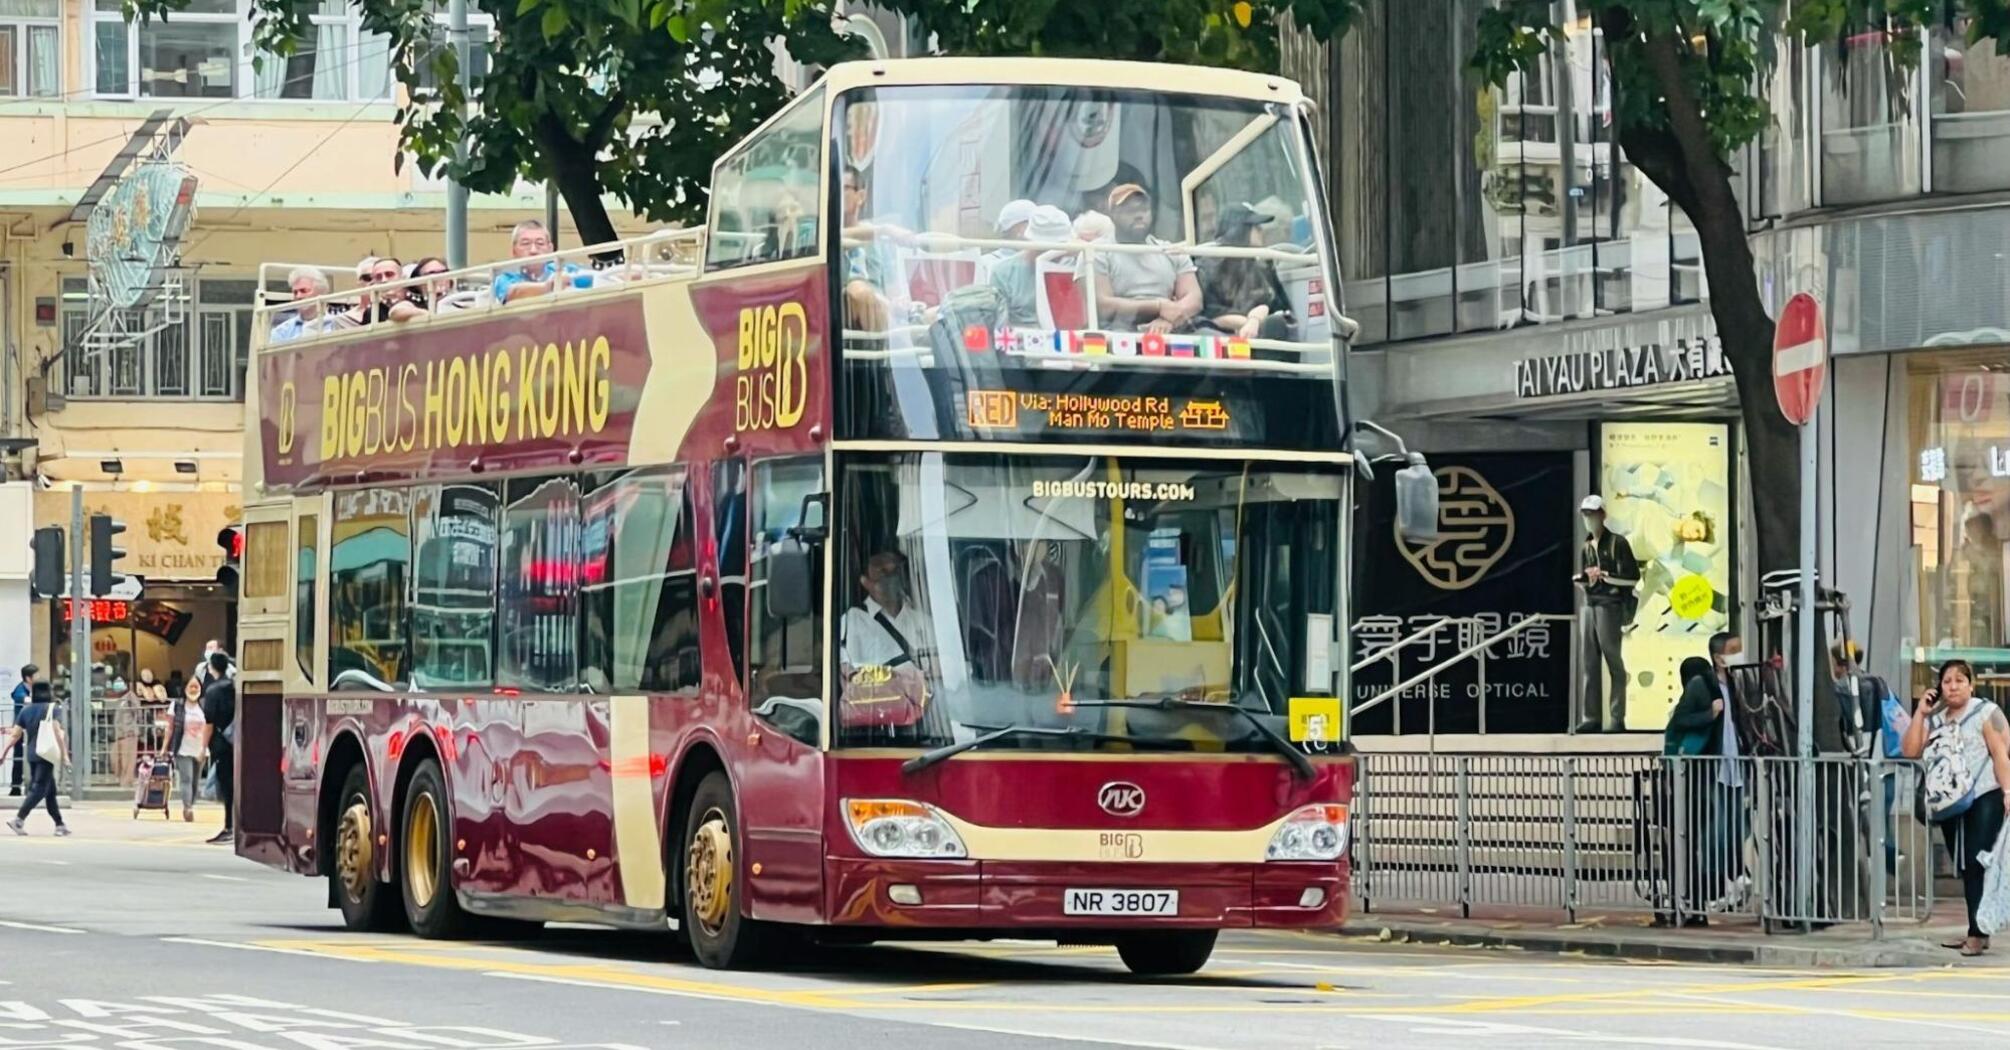 Big Bus Tours double-decker bus in Hong Kong